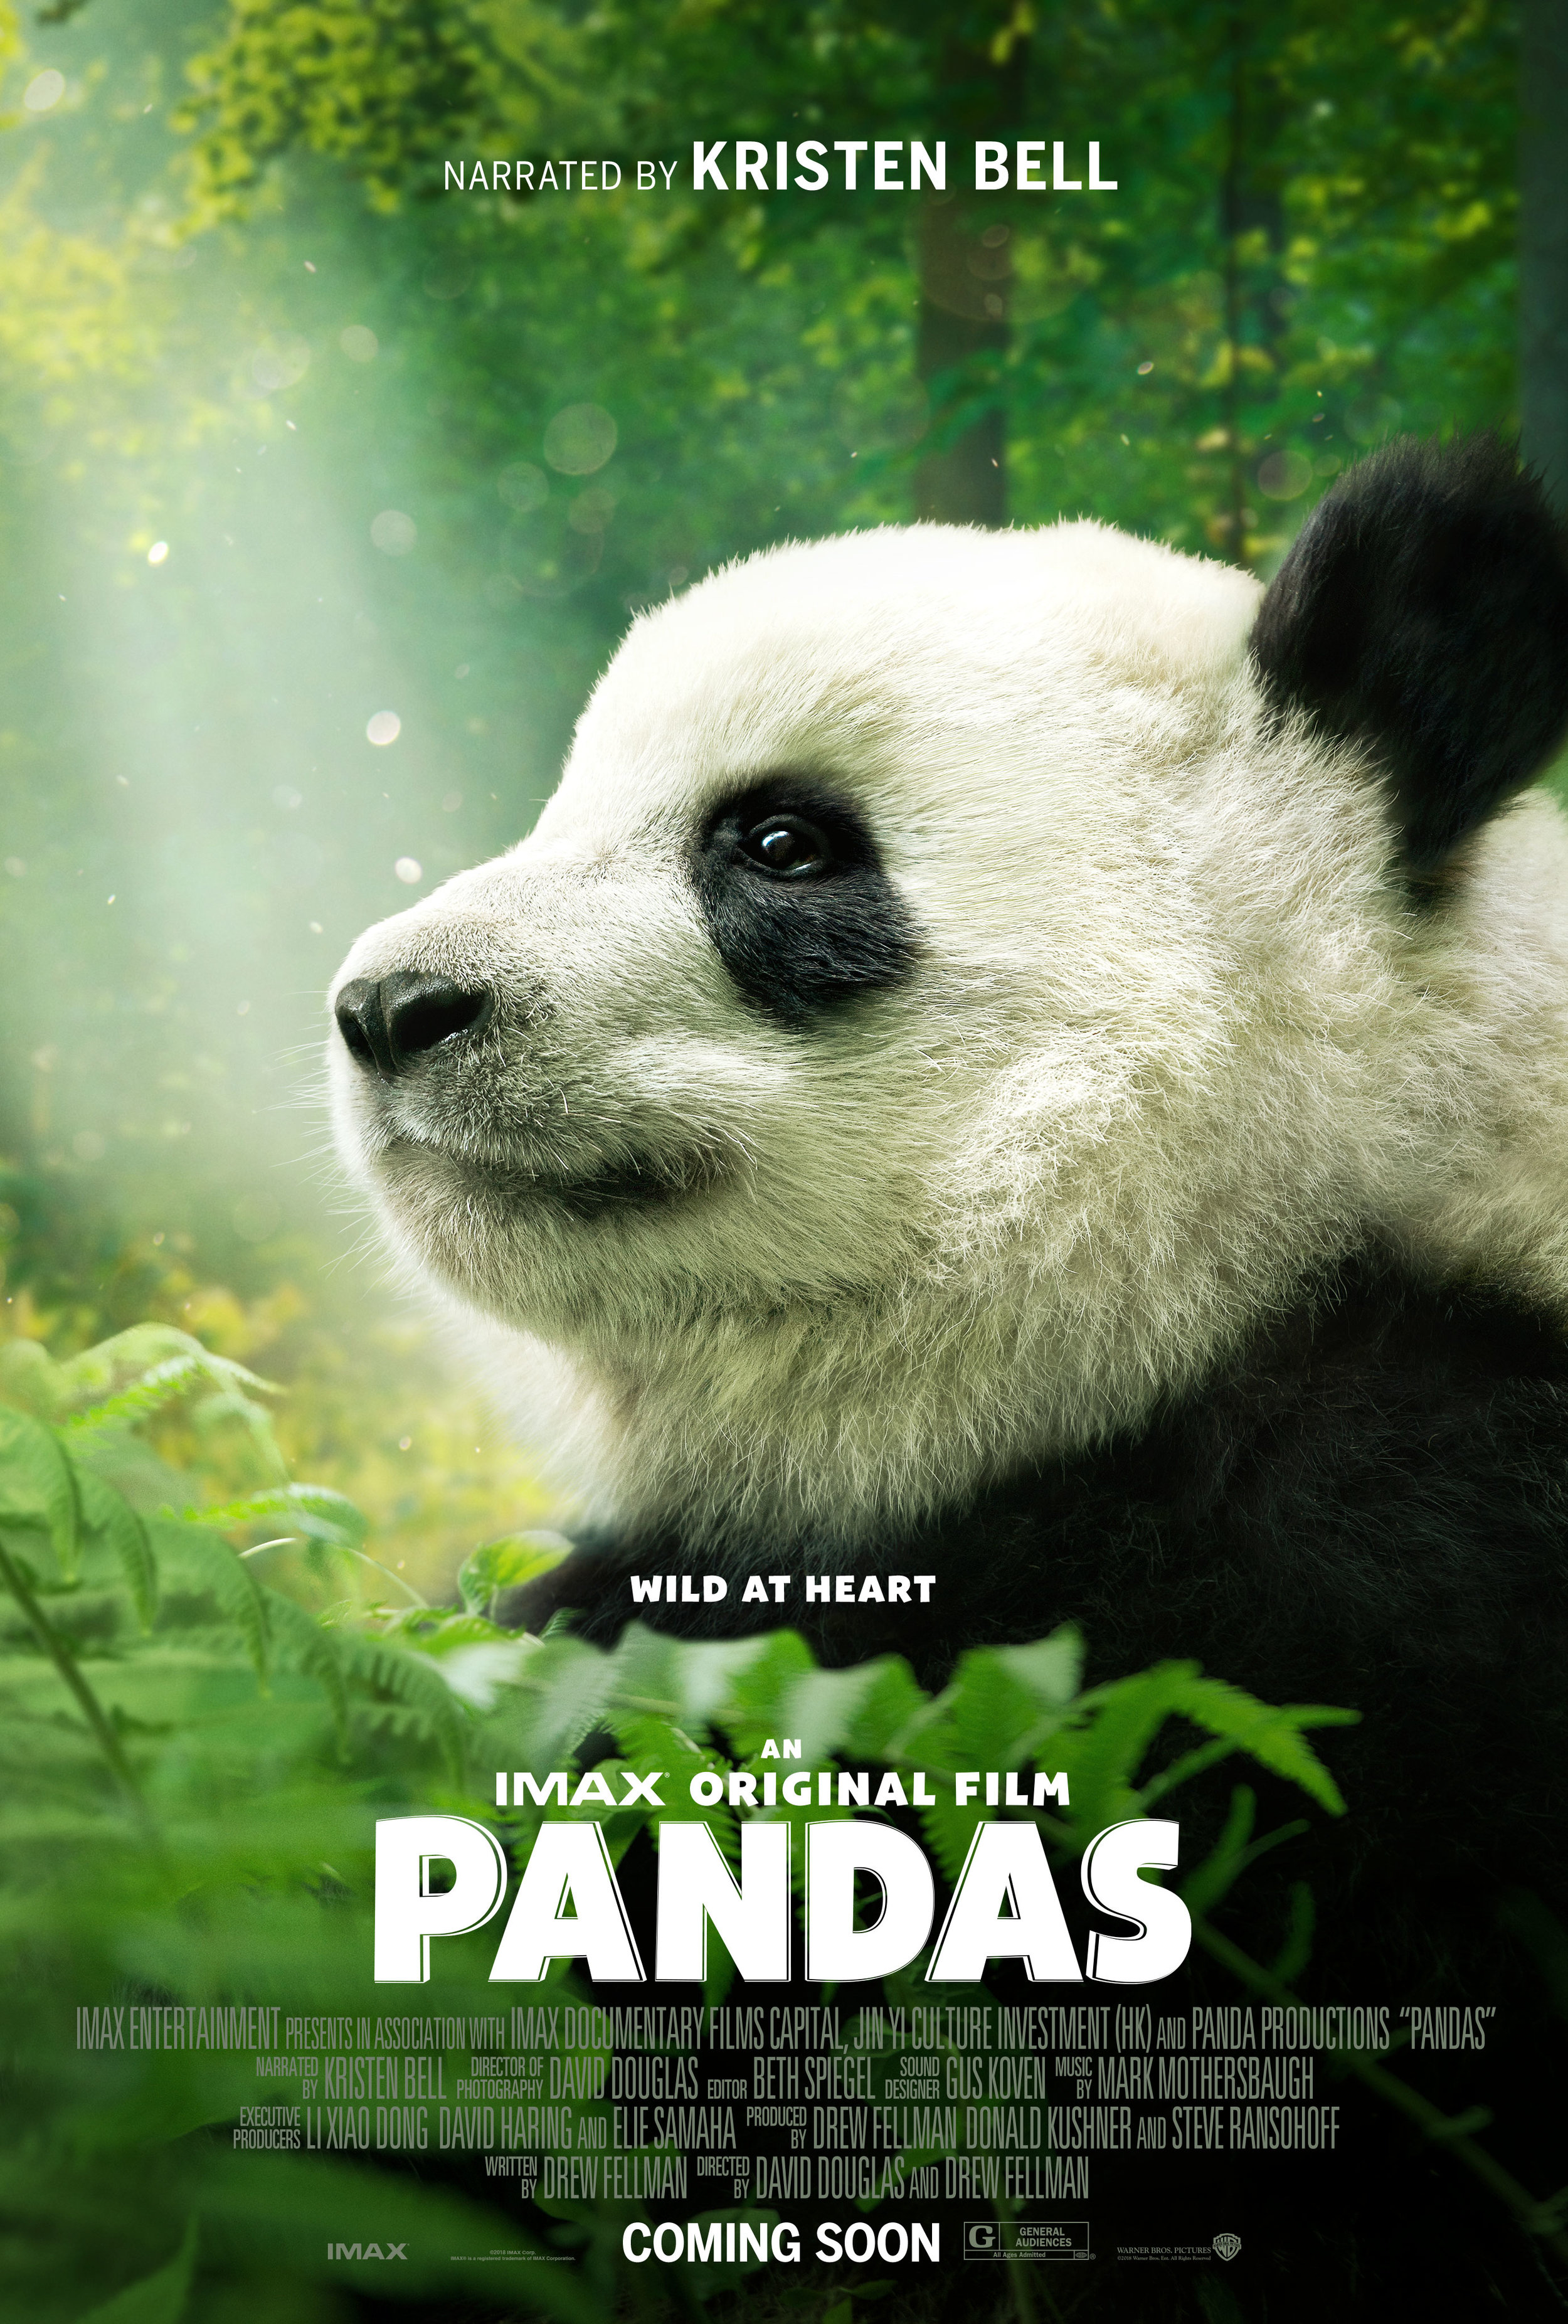 Pandas Poster Image.jpg